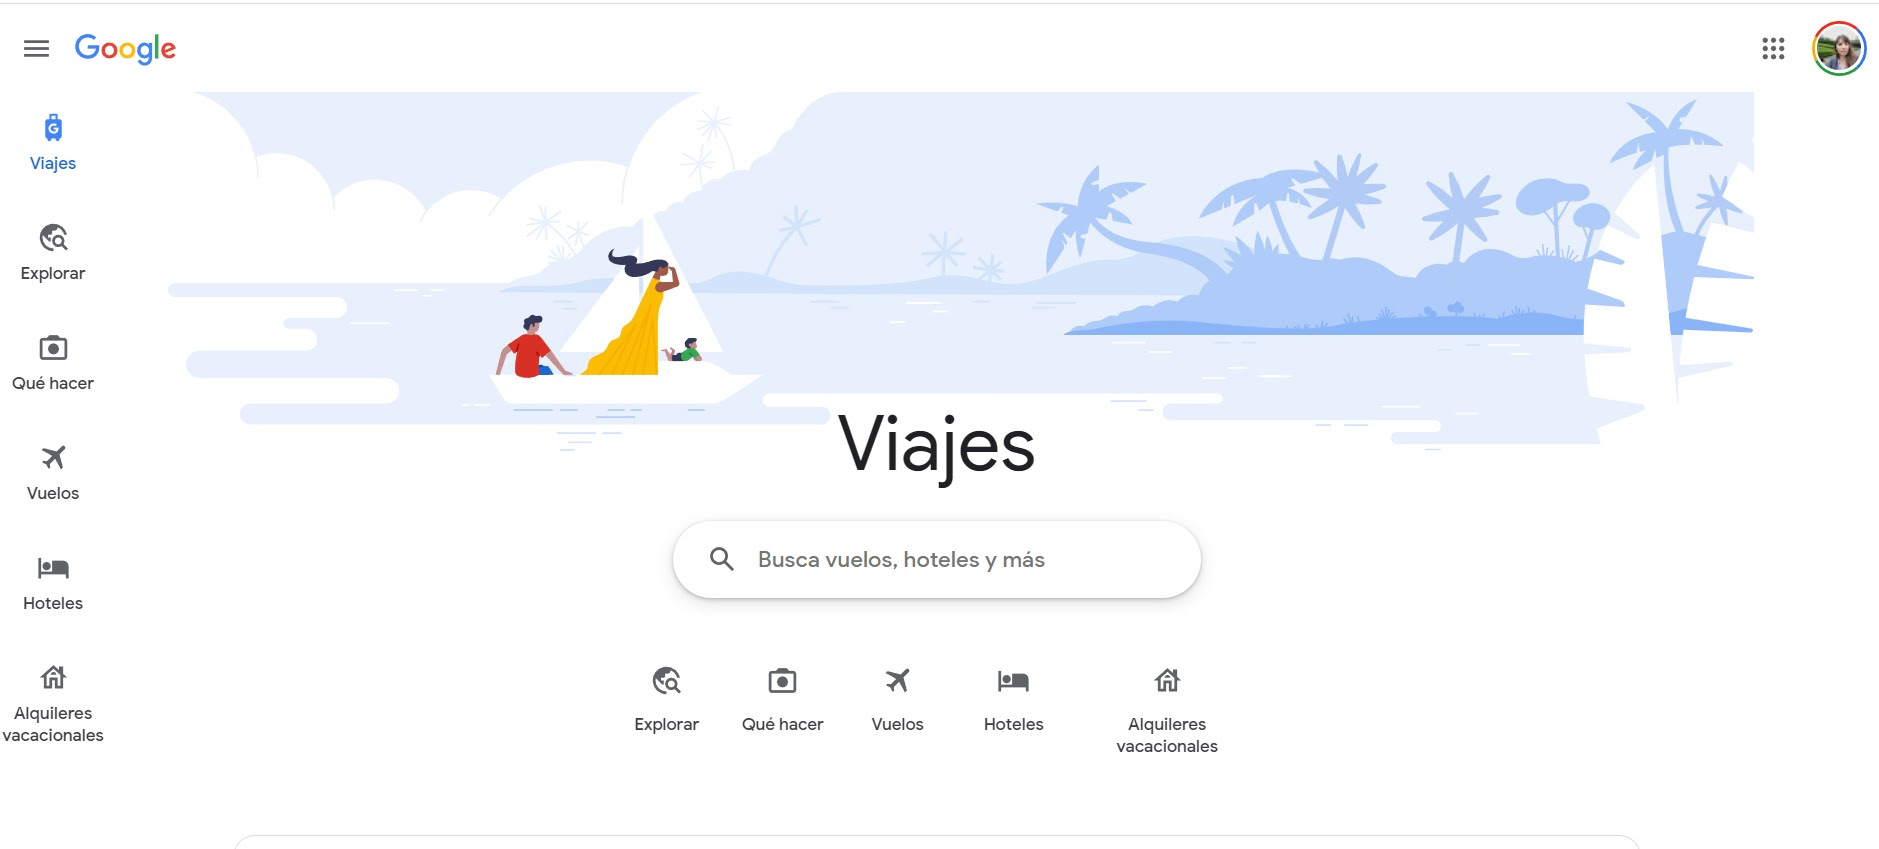 Google viajes tiene un espacio dedicado para Vuelos, así como otras herramientas